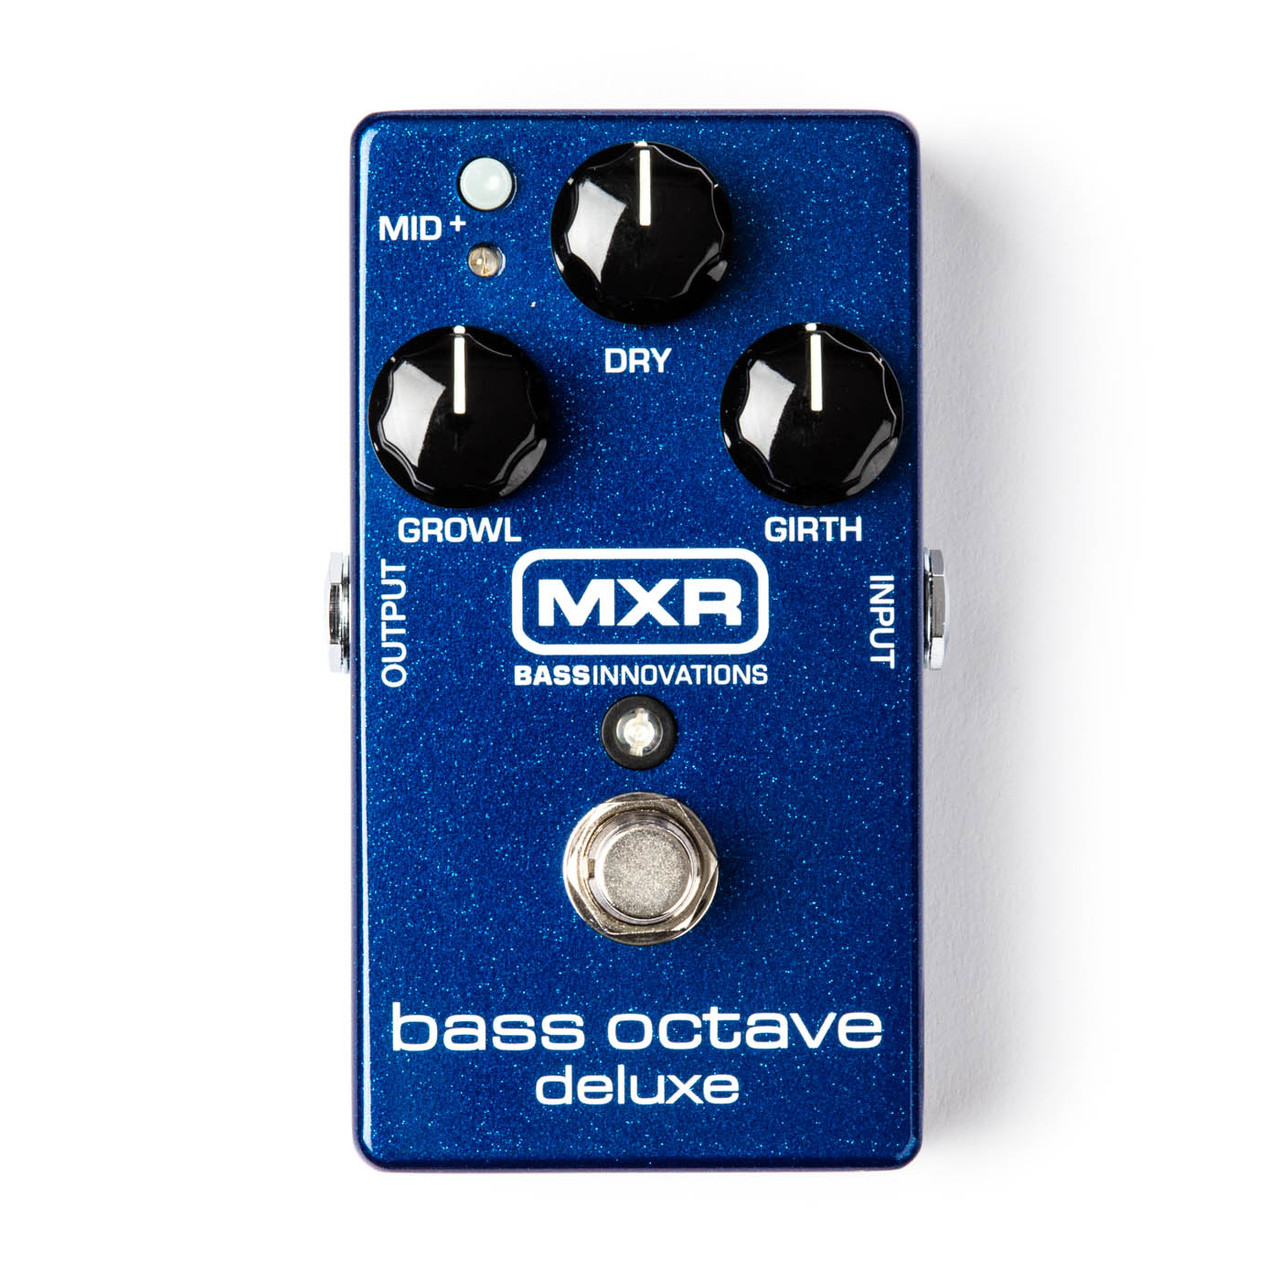 Процессоры эффектов и педали для гитары MXR M288 Bass Octave Deluxe бас гитары clevan cpb 52f bch